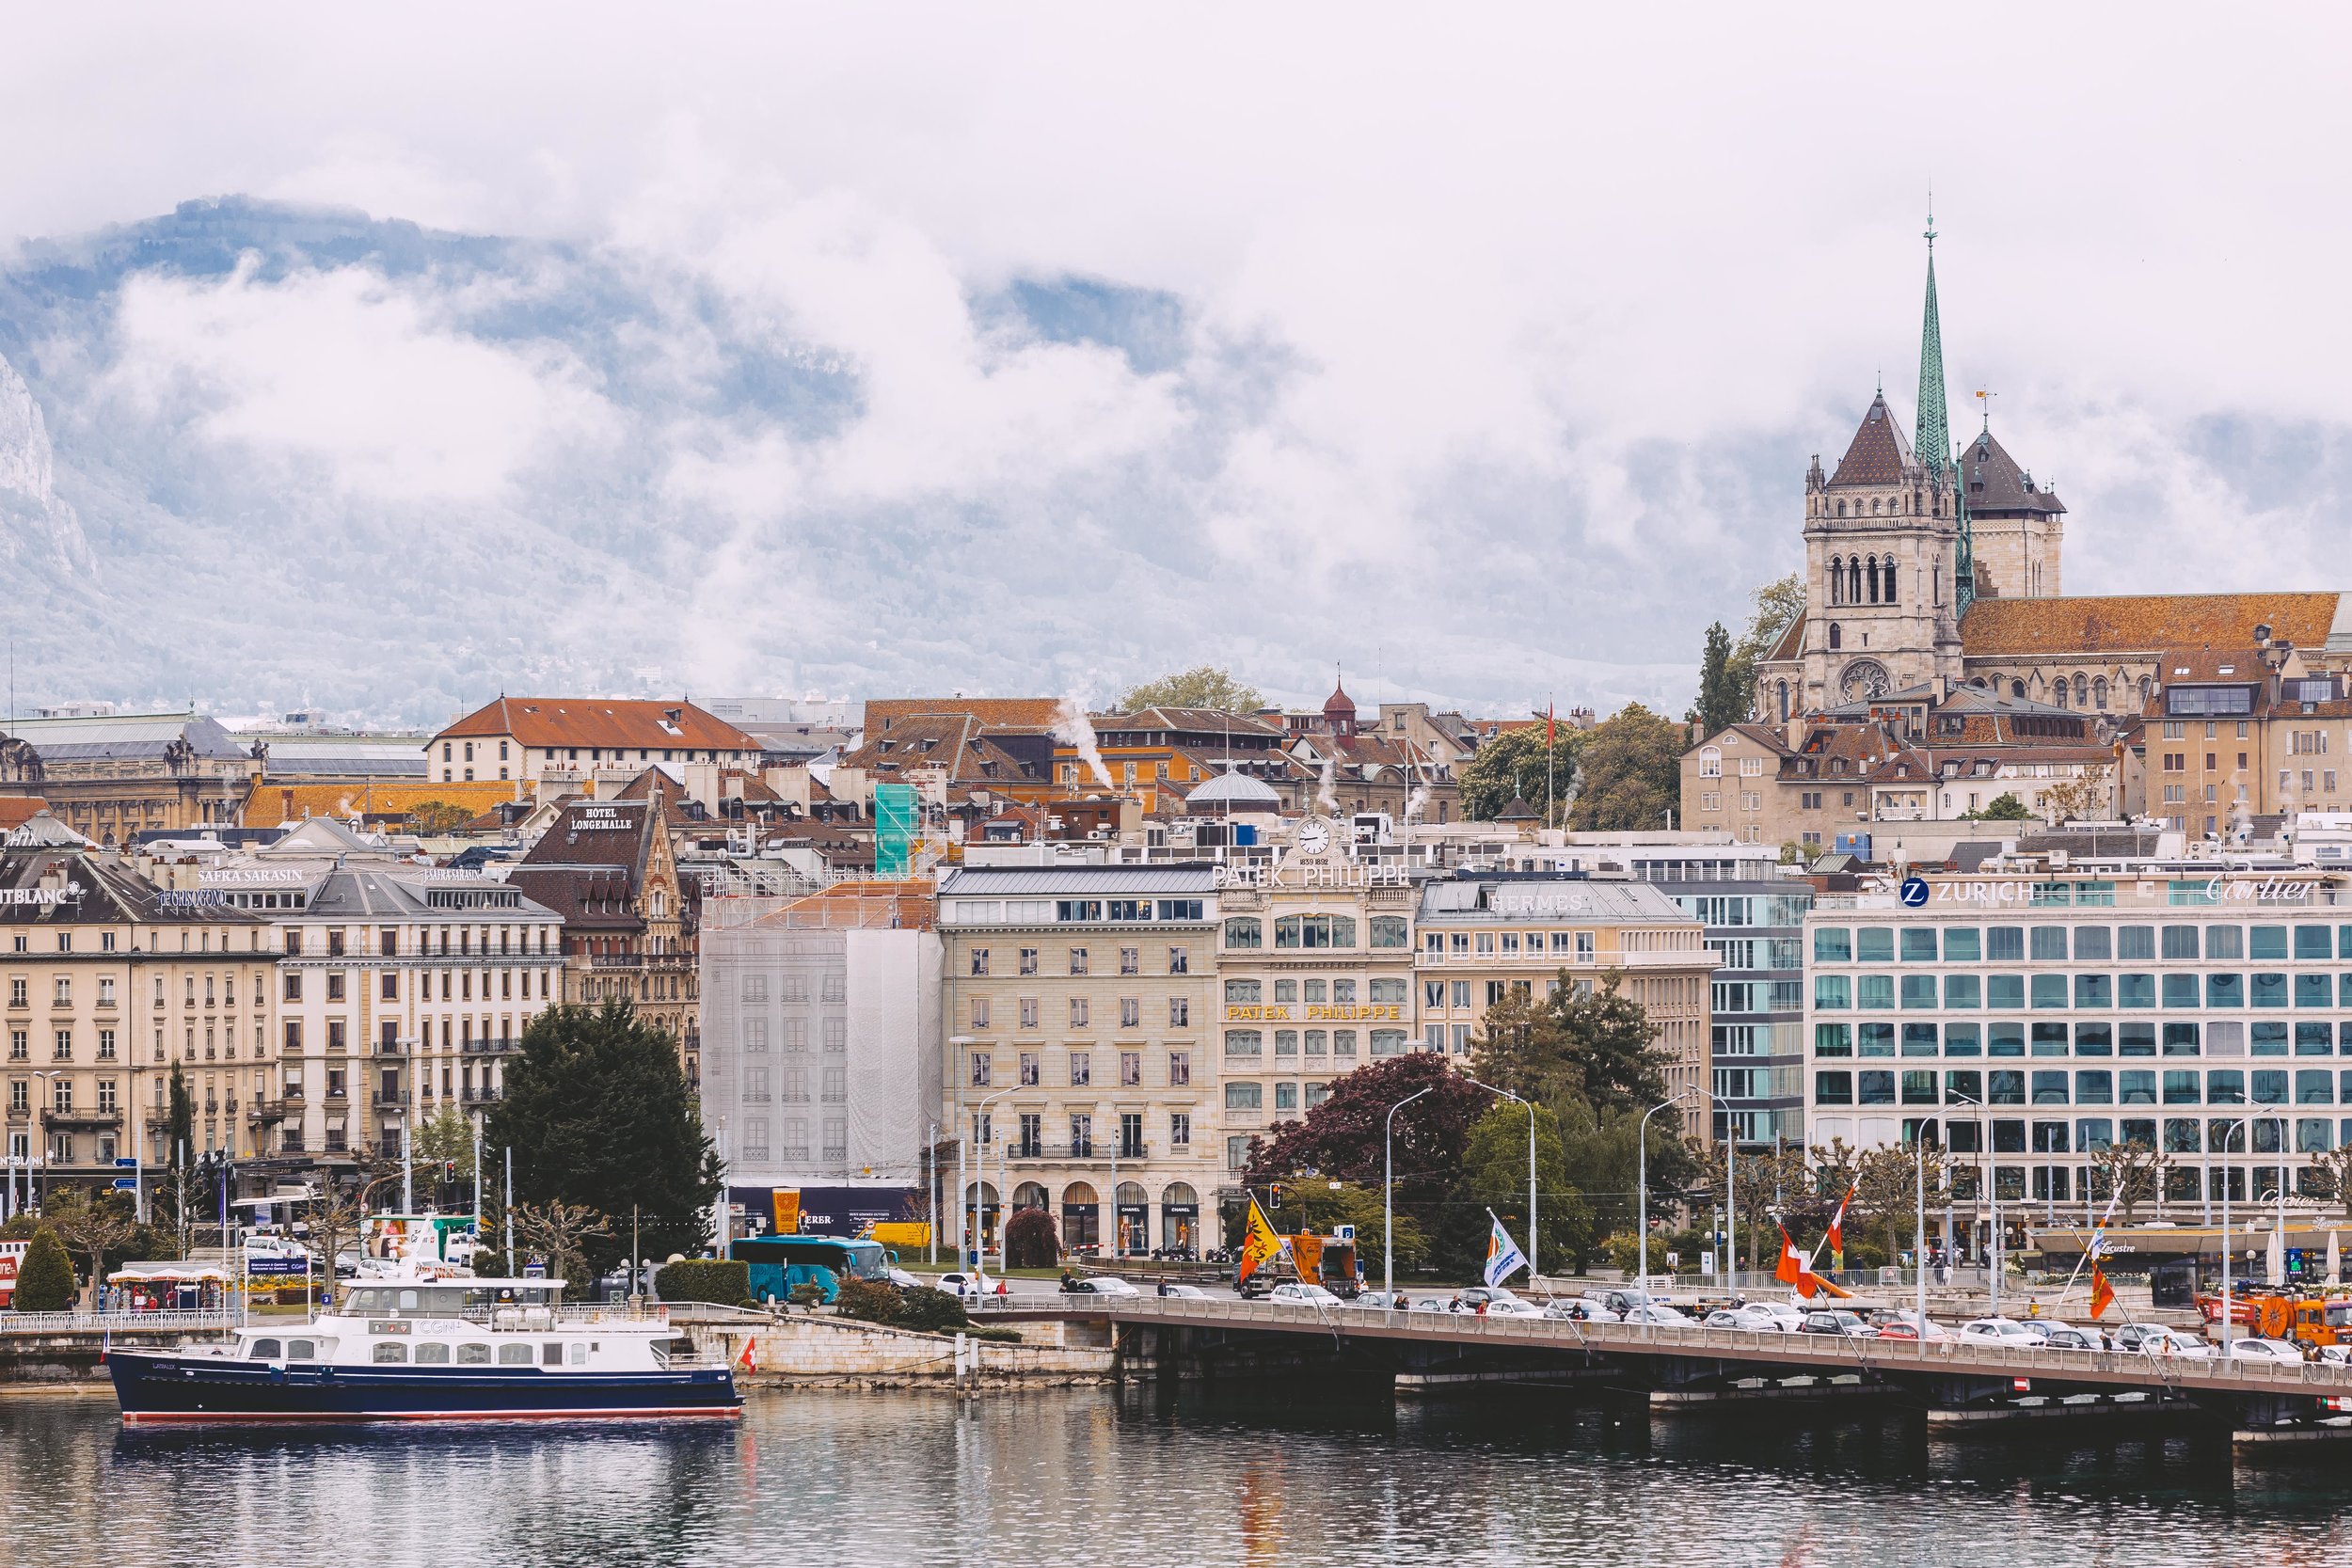 11 Things to Do in Geneva, Switzerland // #readysetjetset #geneva #switzerland #europe #travel www.readysetjetset.net